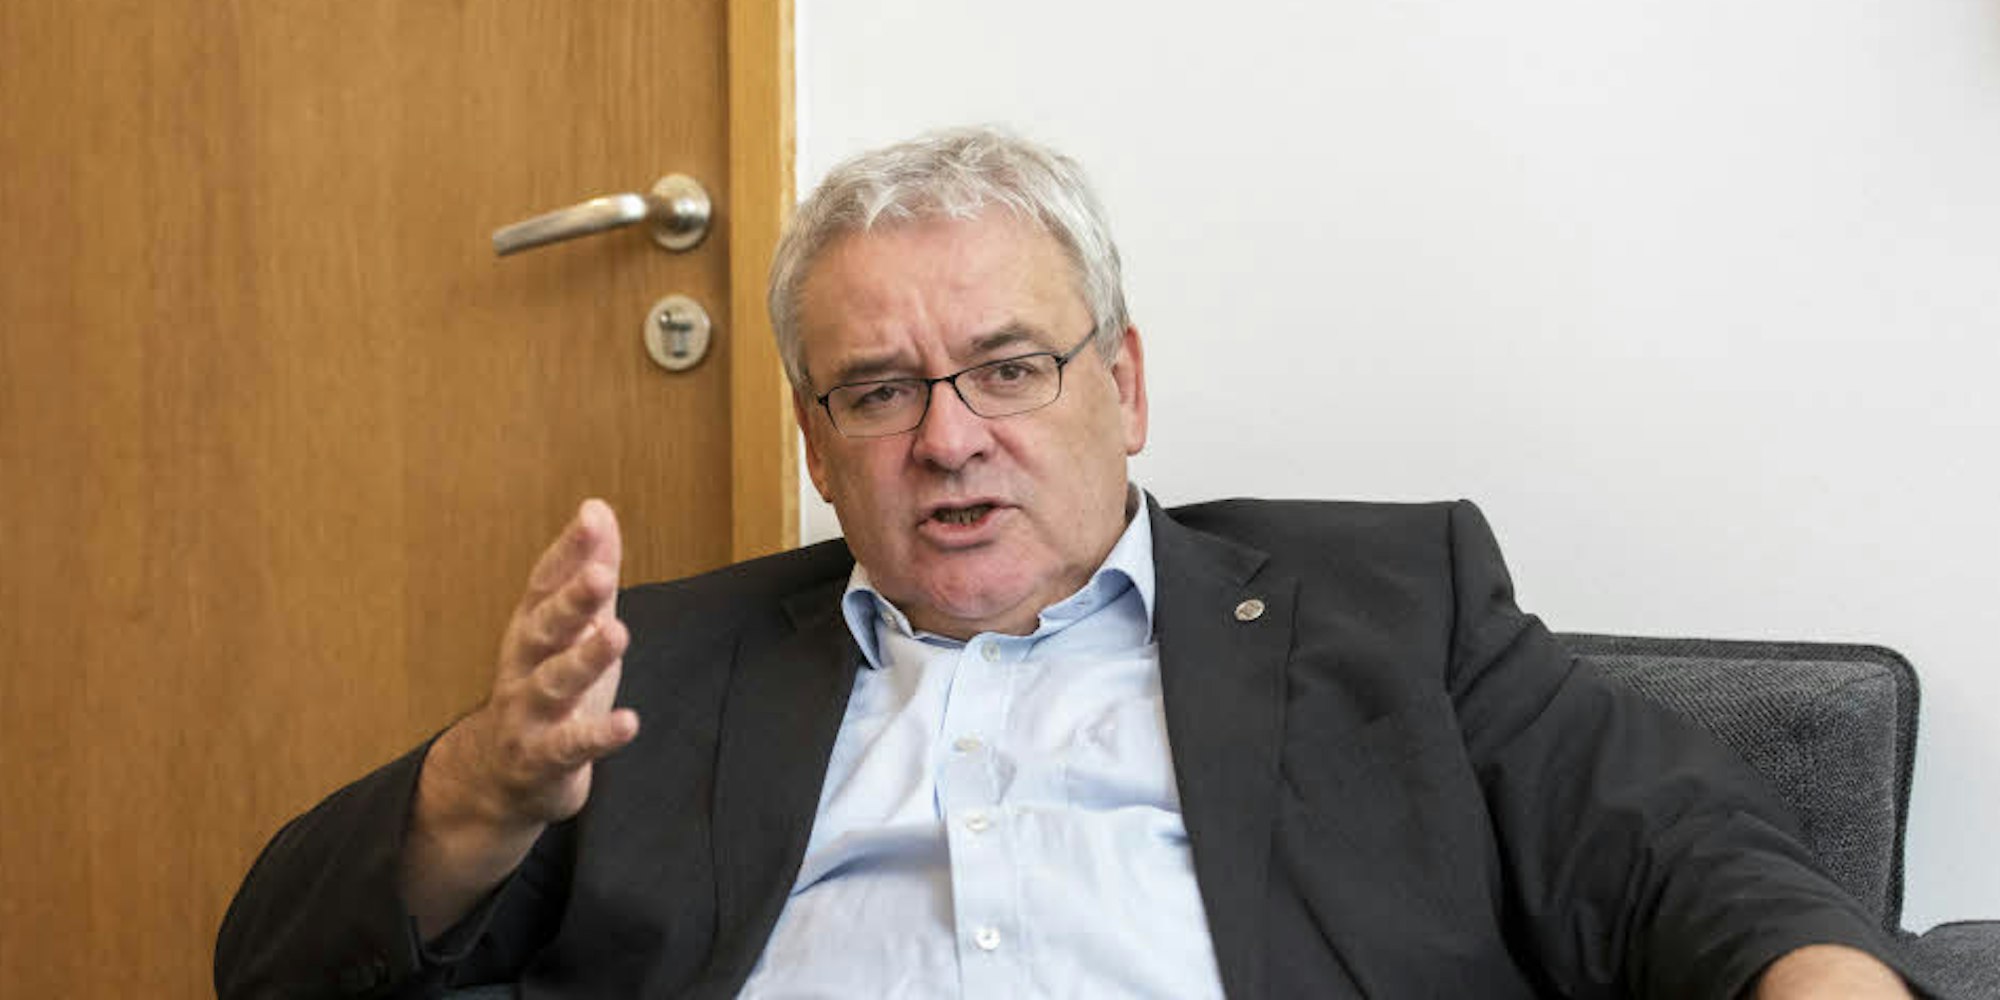 Axel Freimuth ist seit 2005 Rektor an der Kölner Universität.